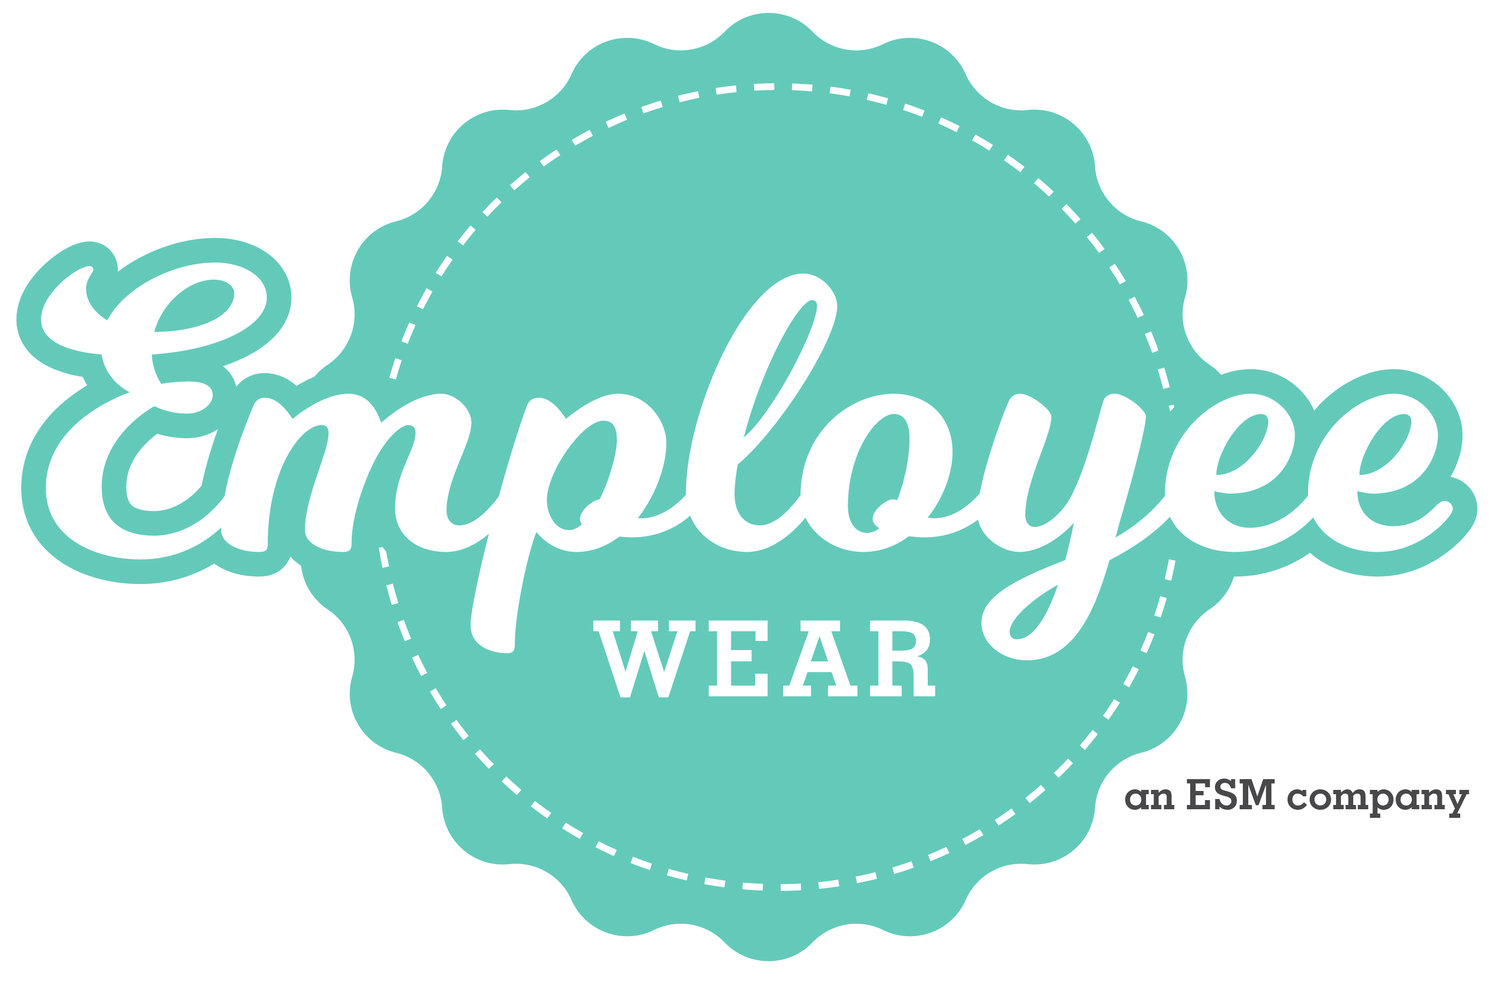 Employee Wear